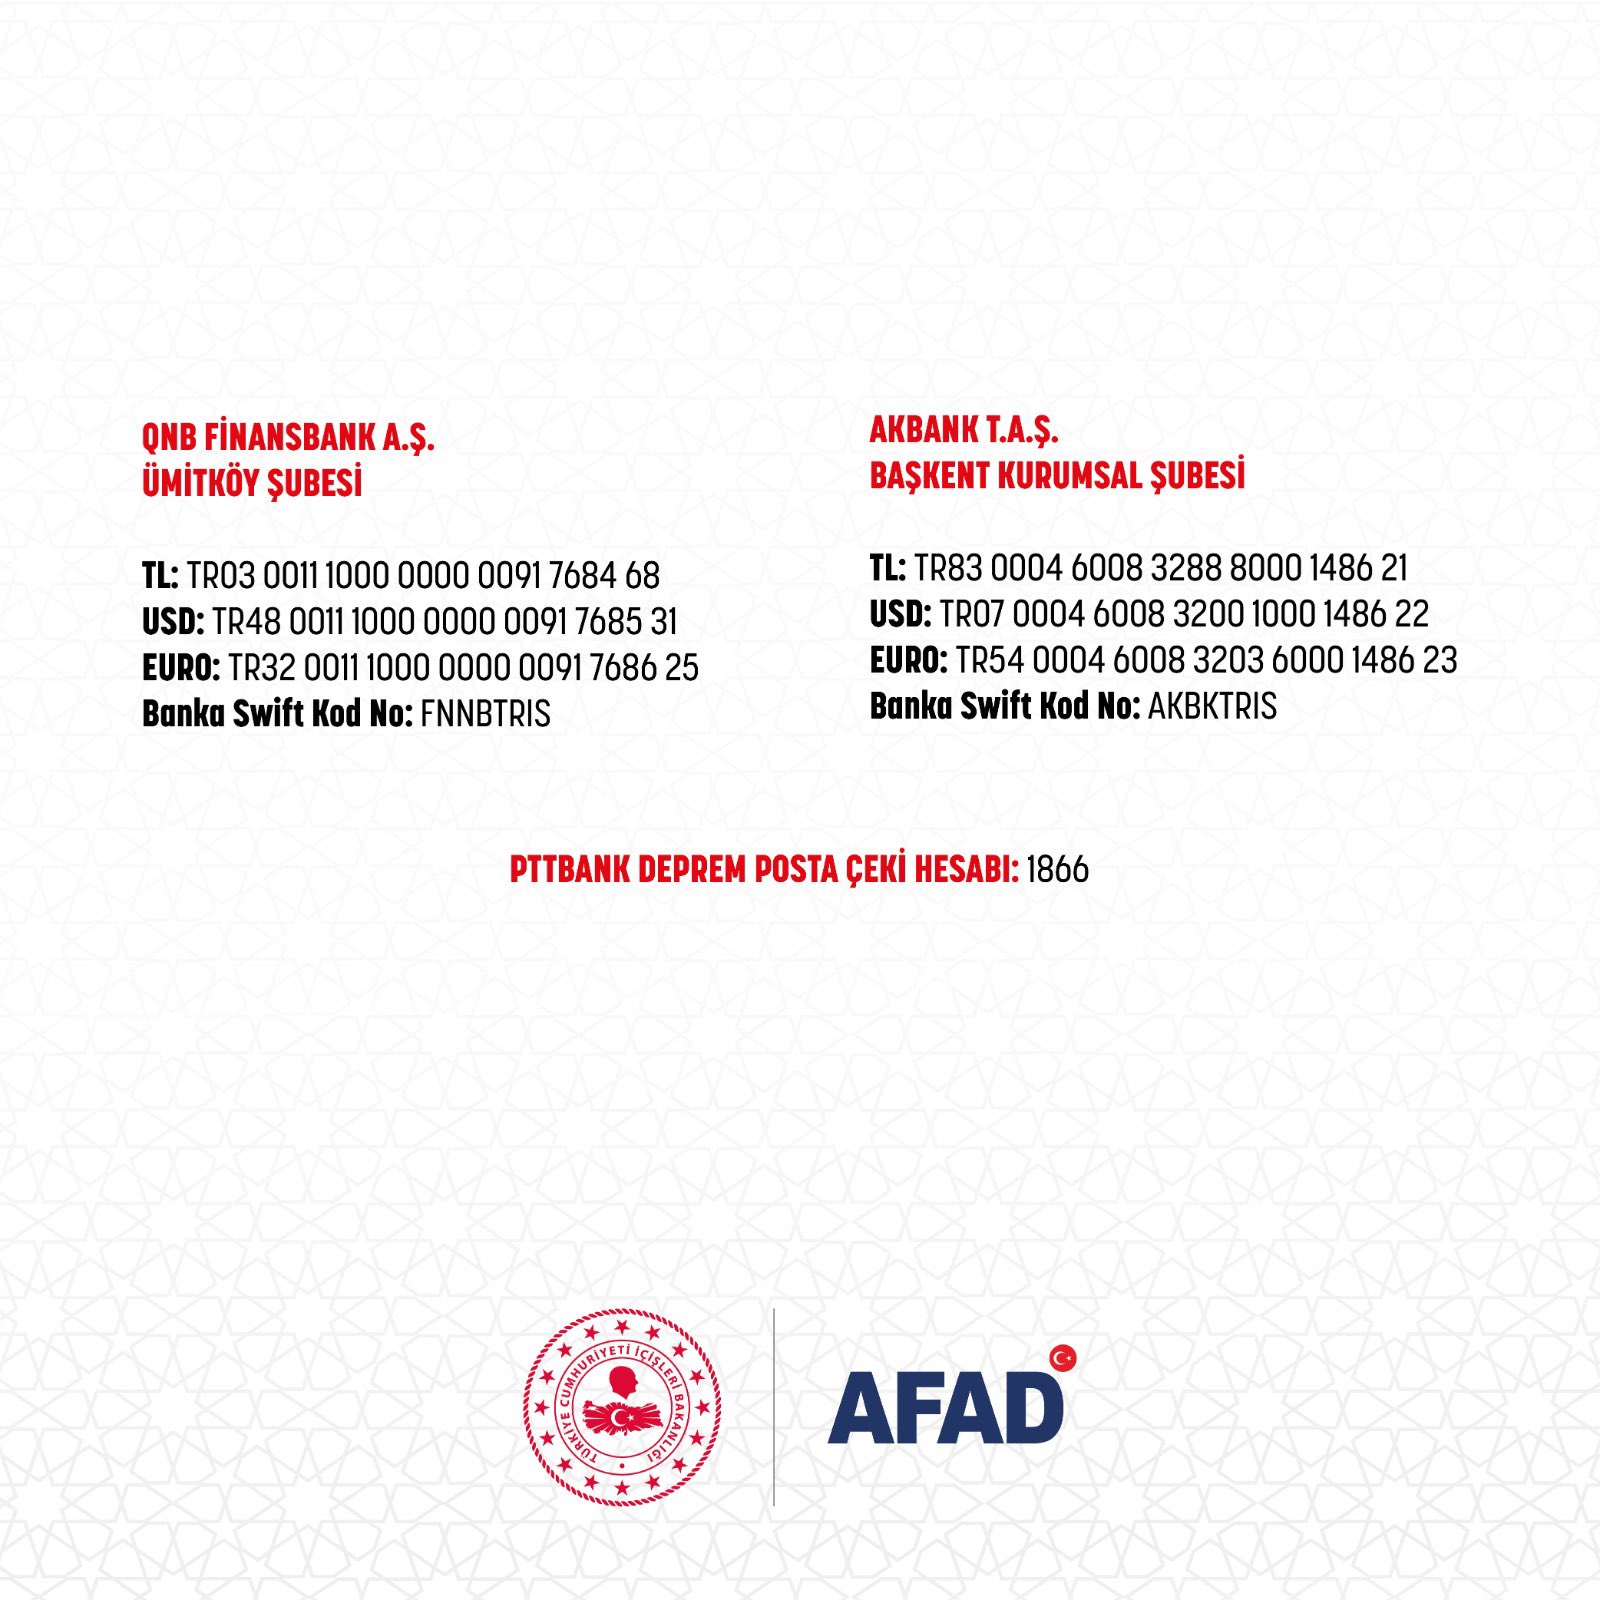 Depremzedelere yardım göndermek isteyenler dikkat! İşte AFAD'ın bağış hesapları